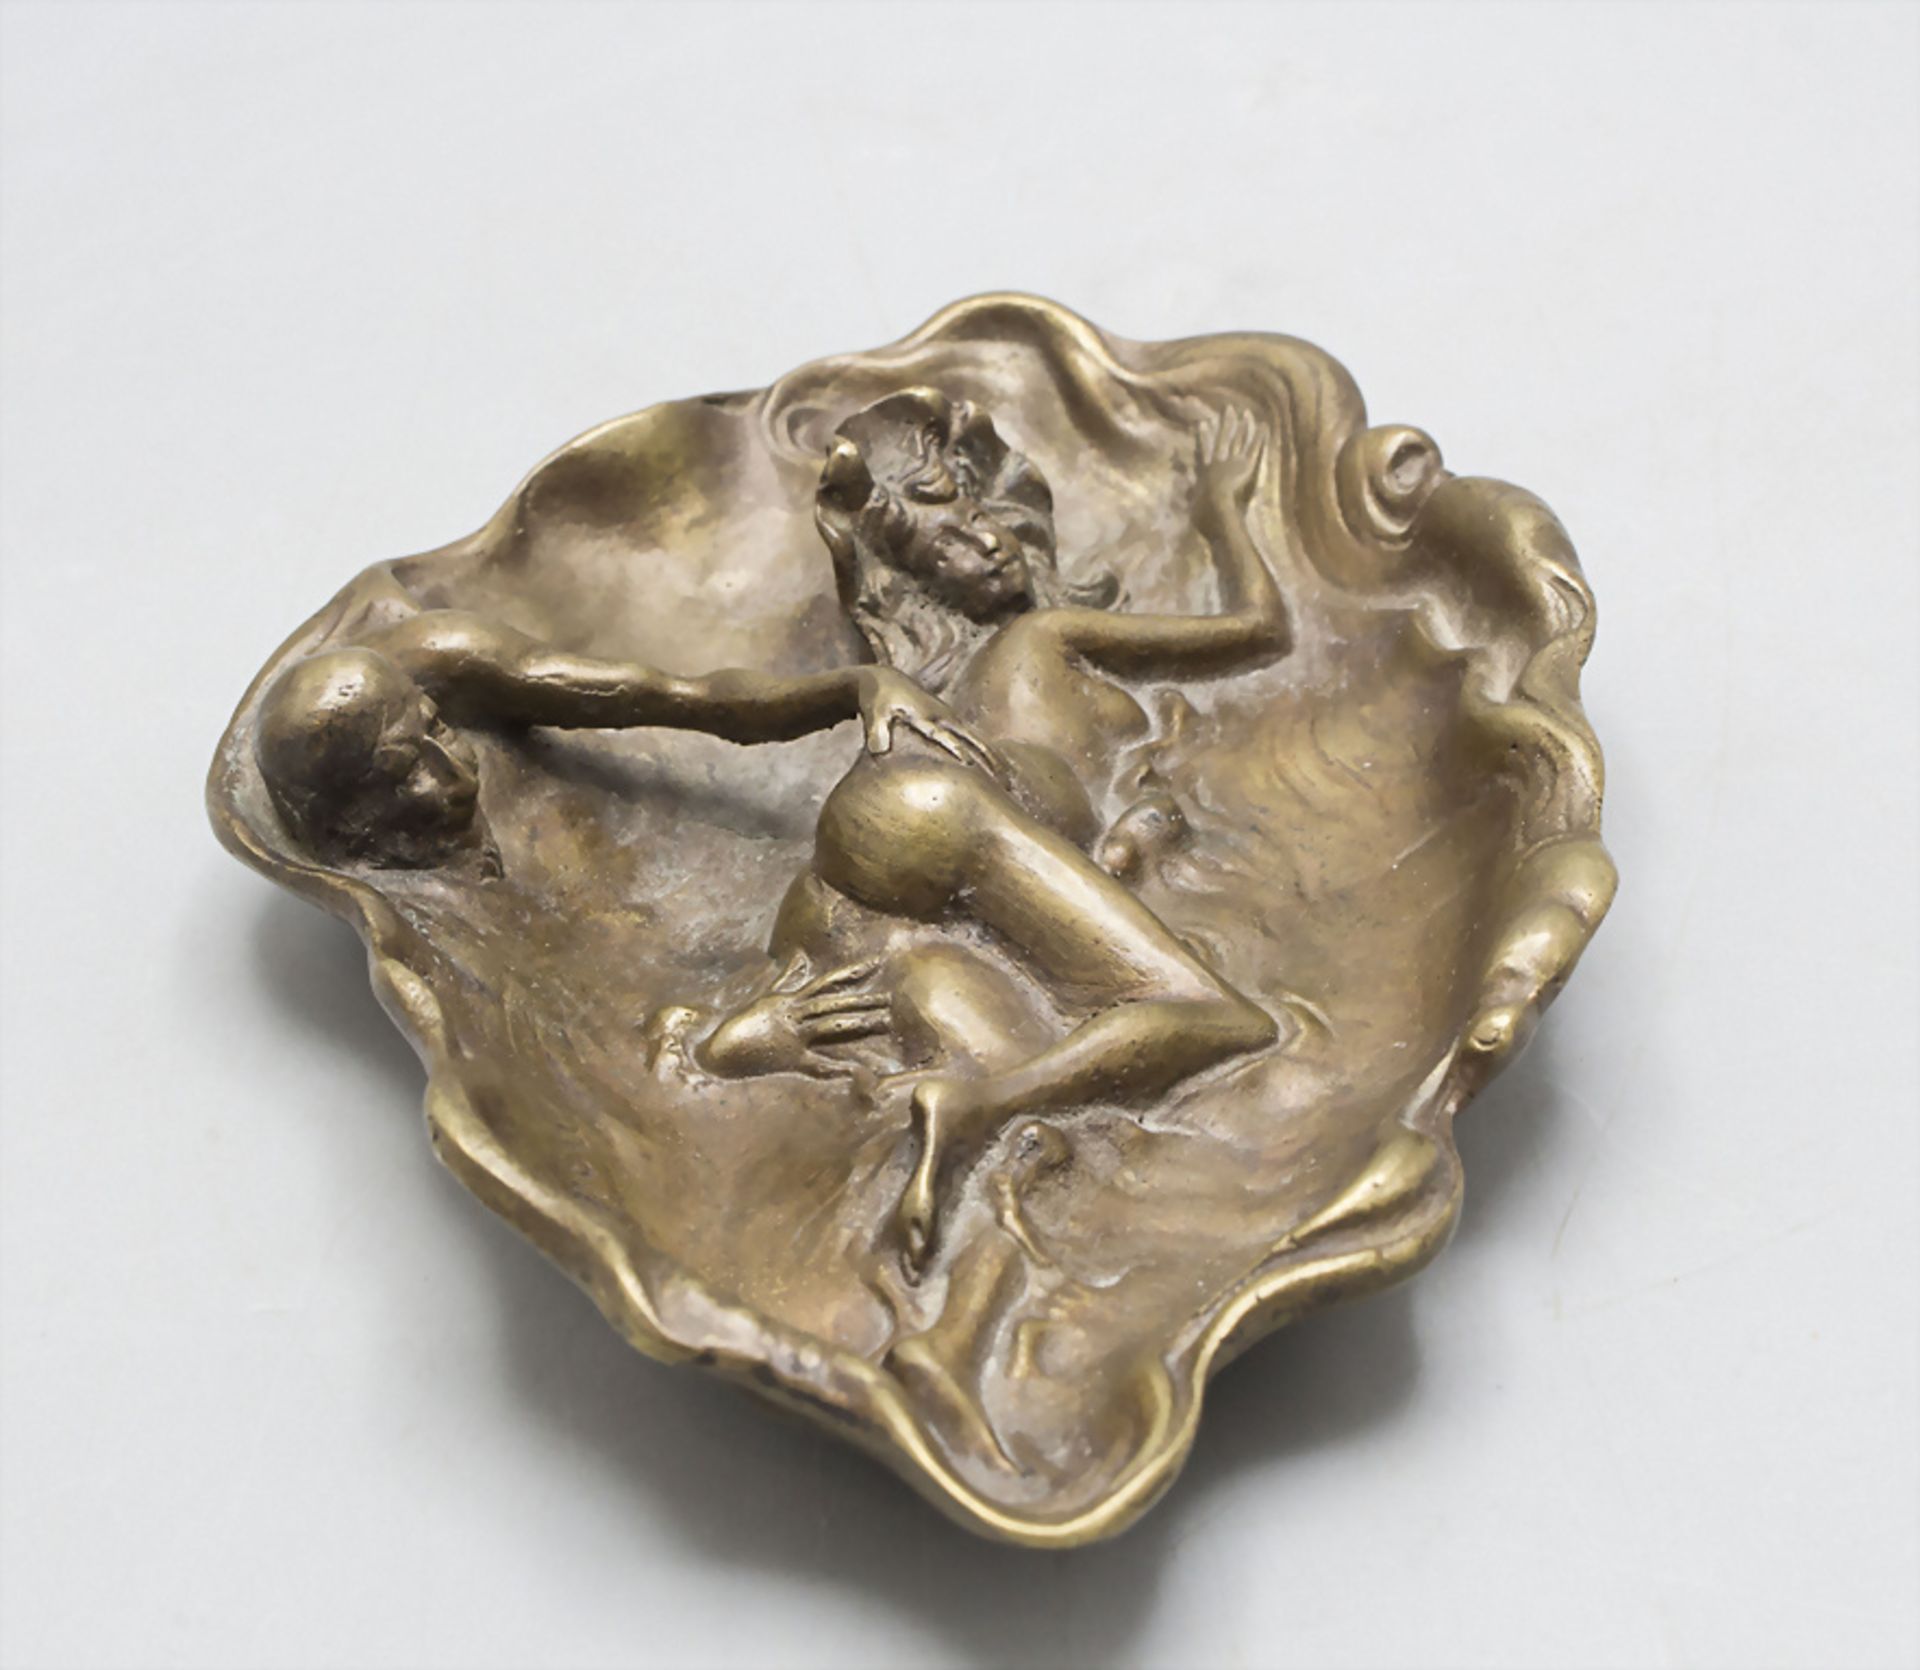 Erotische Jugendstil Bronzeschale / An erotic Art Nouveau vide poche, M. Renou, Frankreich, um 1900 - Bild 2 aus 4